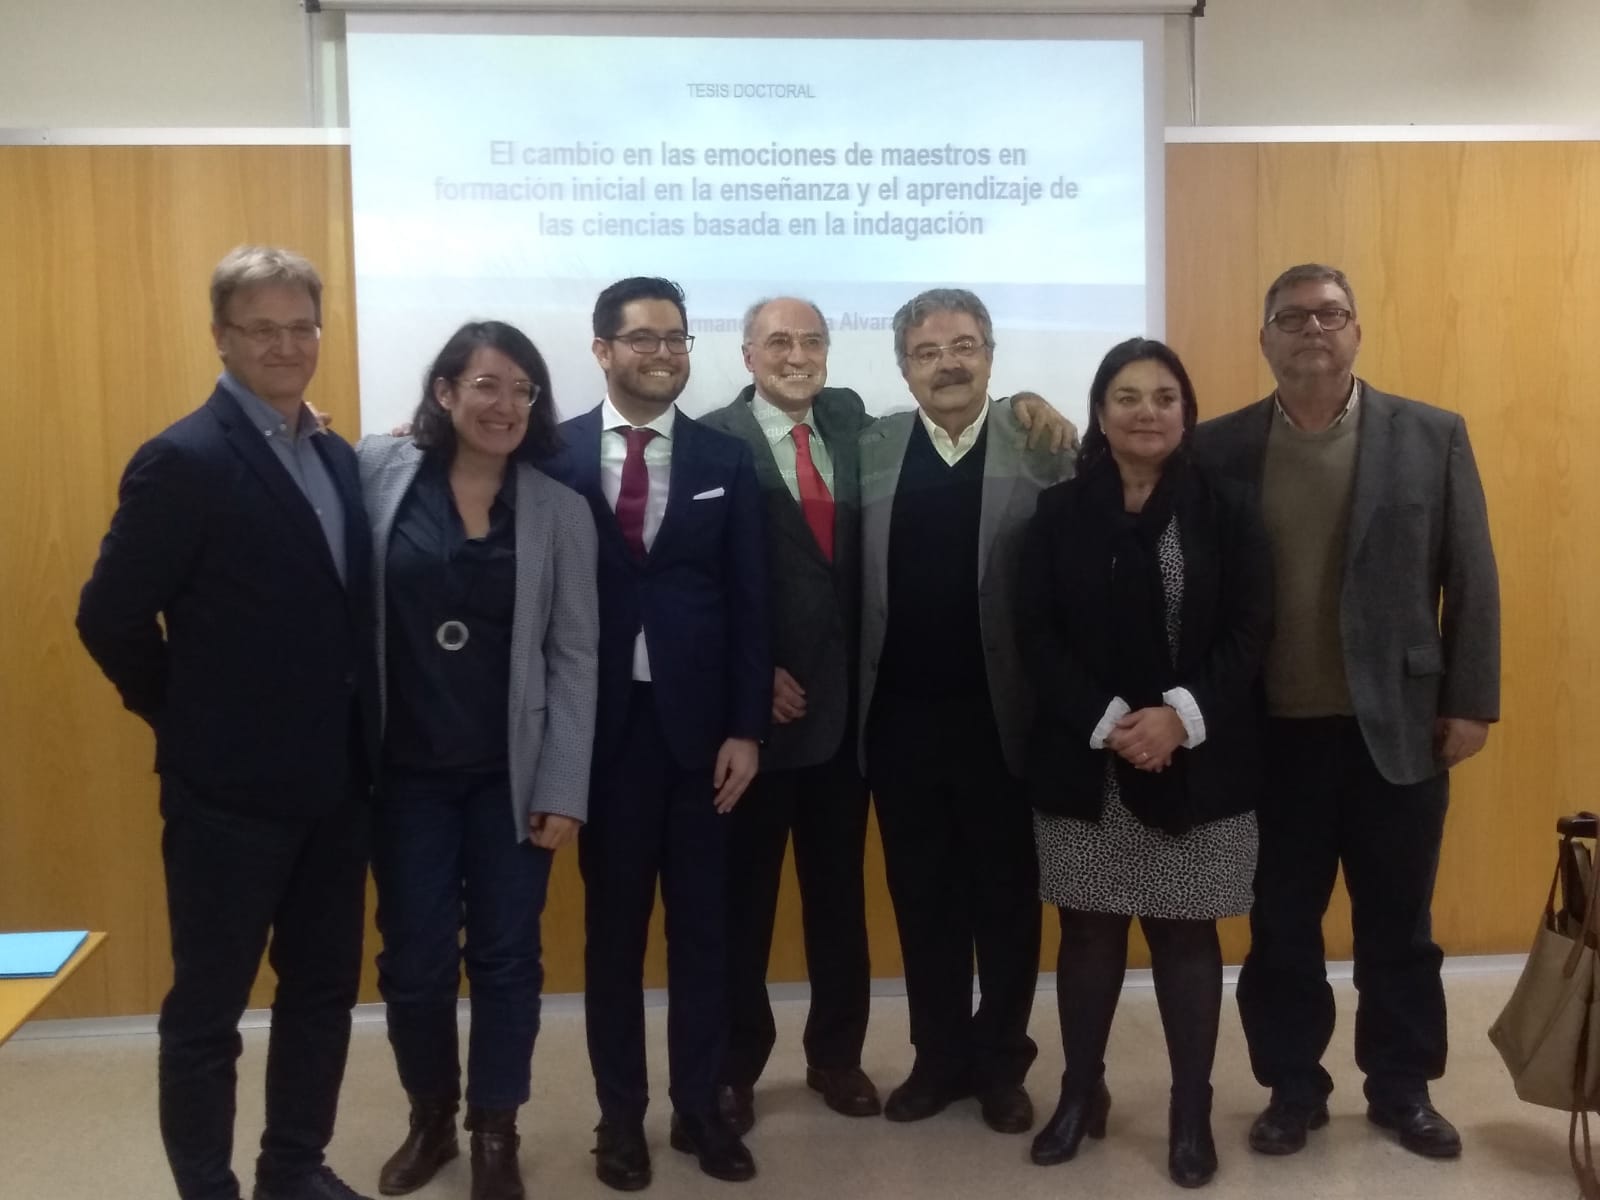 Escuela de Formación Docente recibe como profesor invitado al Dr. Diego Armando Retana Alvarado quien obtuvo su Doctorado en la Universidad de Huelva con una investigación pionera en el ámbito nacional e internacional